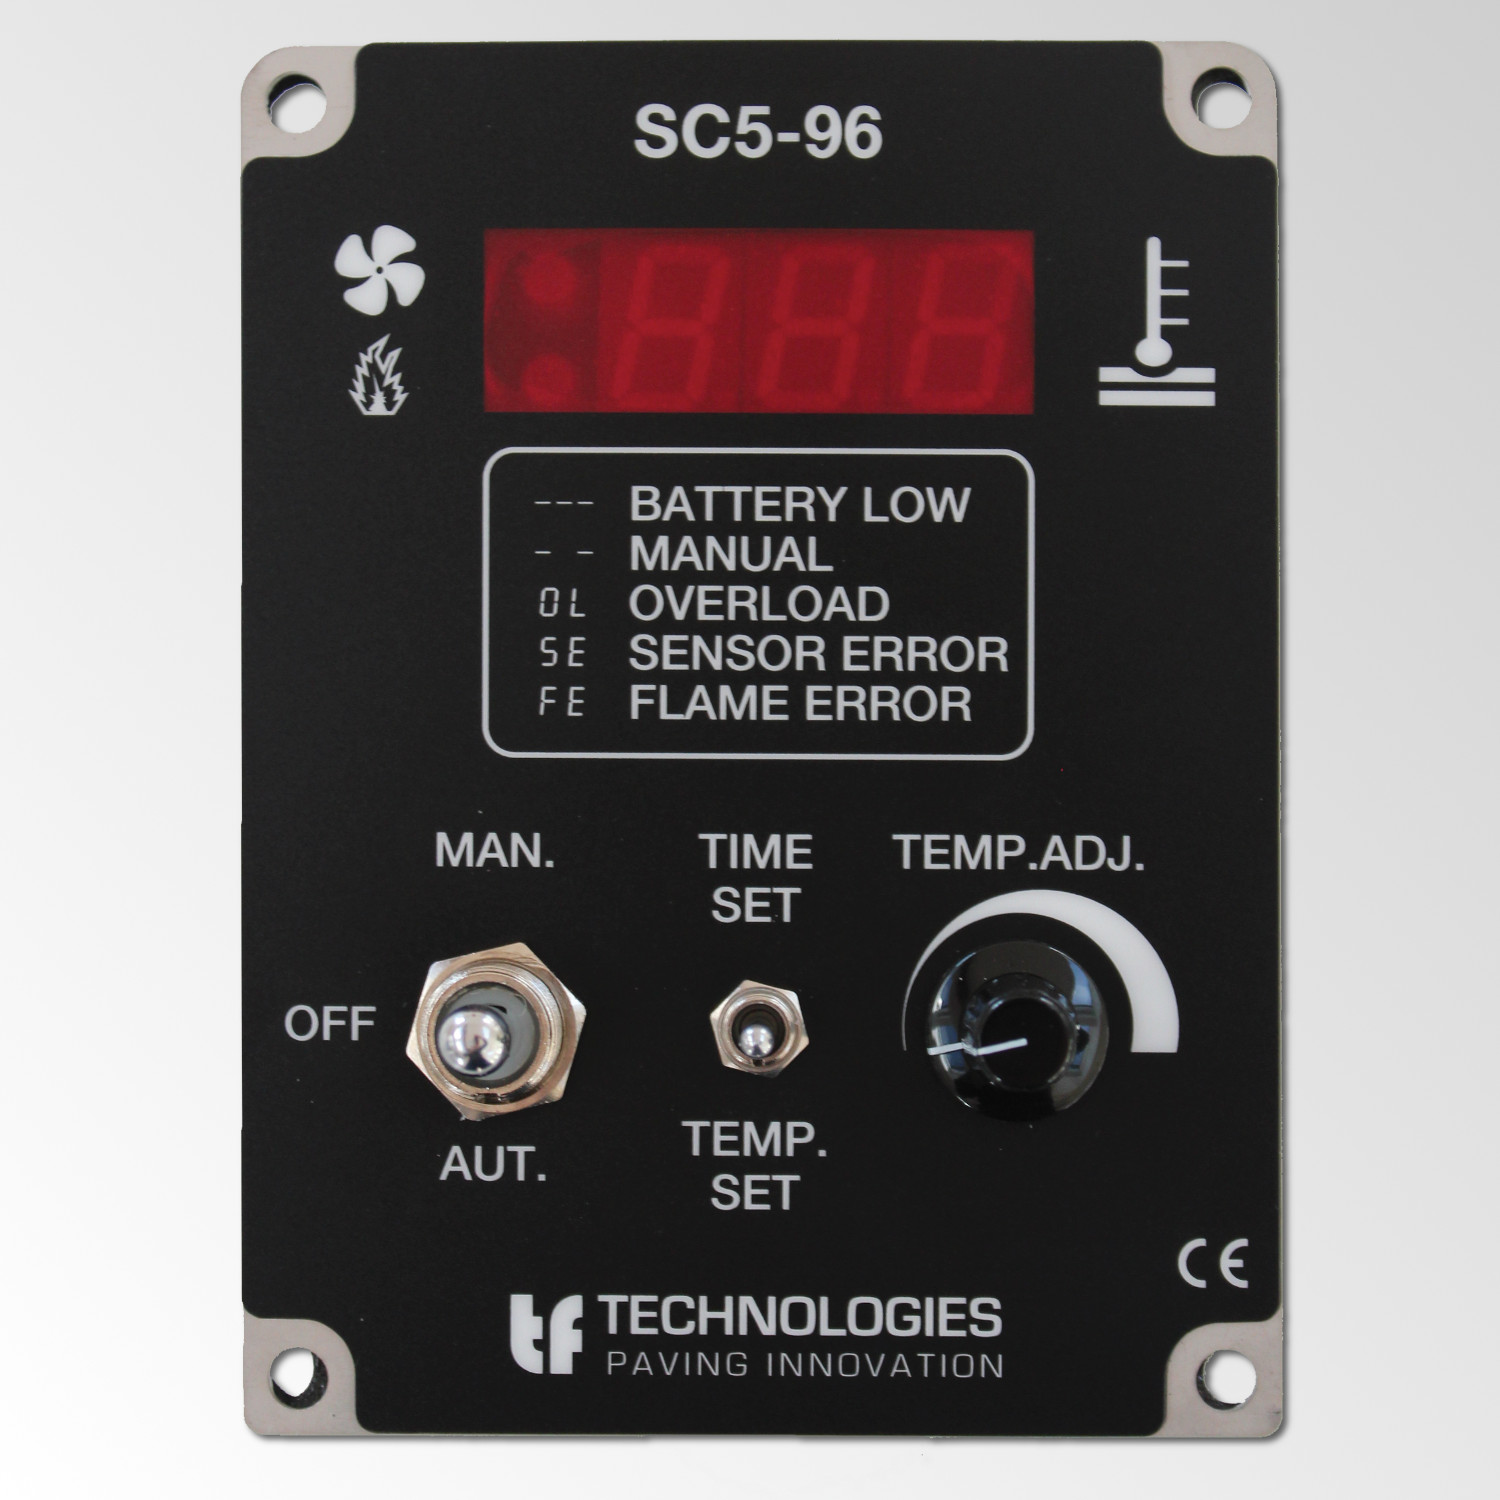 SC5-96 1-channel temperature control